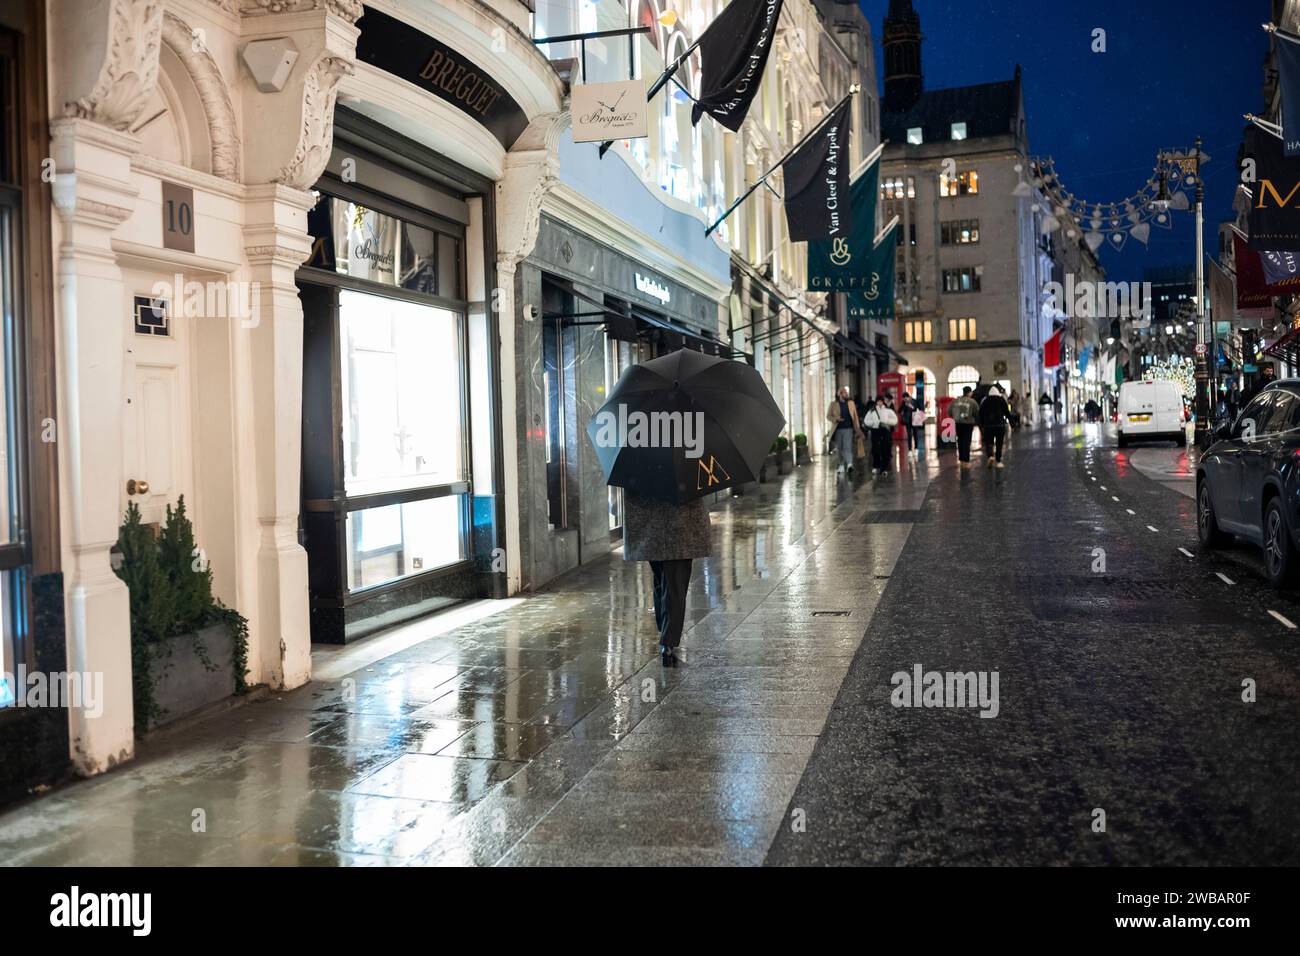 Gli amanti dello shopping affrontano il freddo inverno durante le fredde nevi e le docce a pioggia in Old Bond Street, l'etichetta di lusso di Londra Street, Inghilterra, Regno Unito Foto Stock